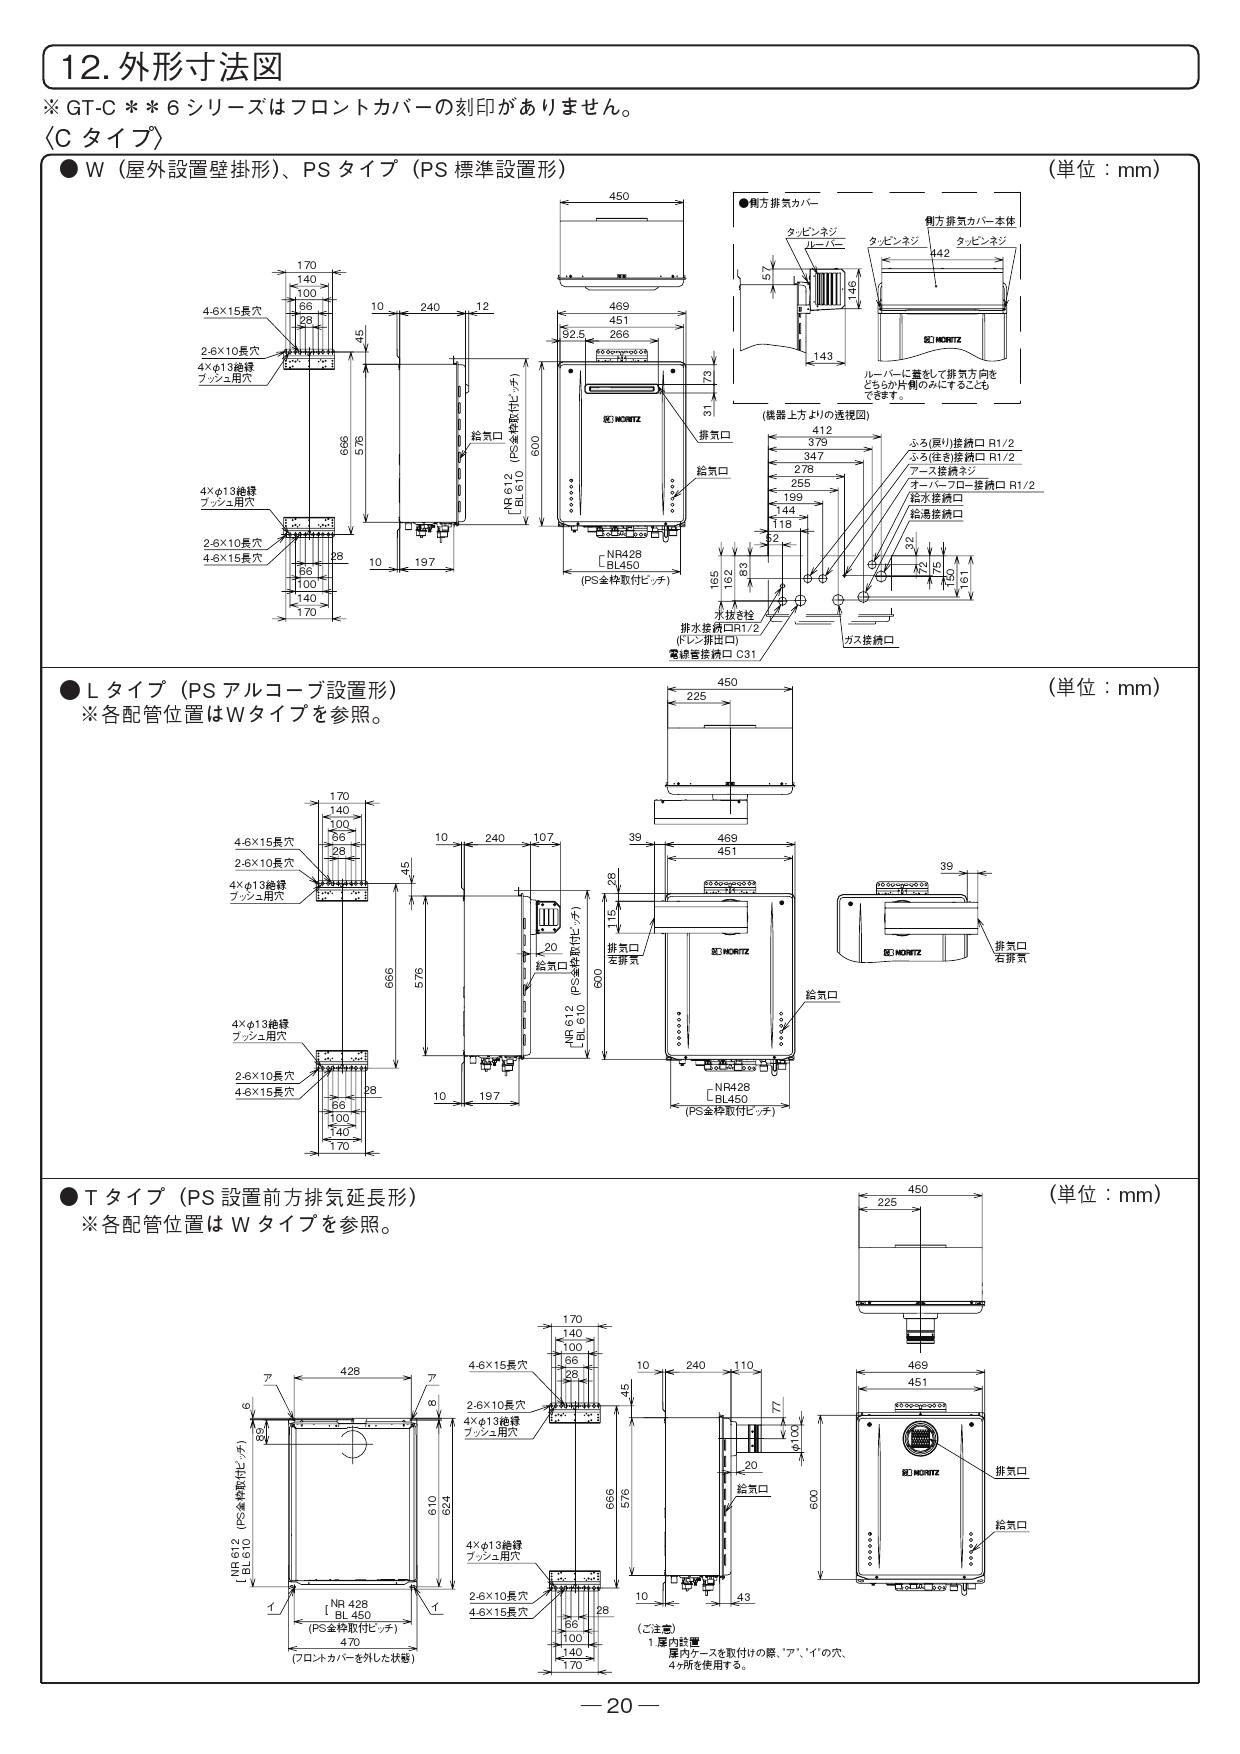 【購入純正】「GT-2460SAWX-2 + RC-B001」 ガスふろ給湯器 都市ガス用 + リモコンセット NORITZ ■K0023768 給湯設備